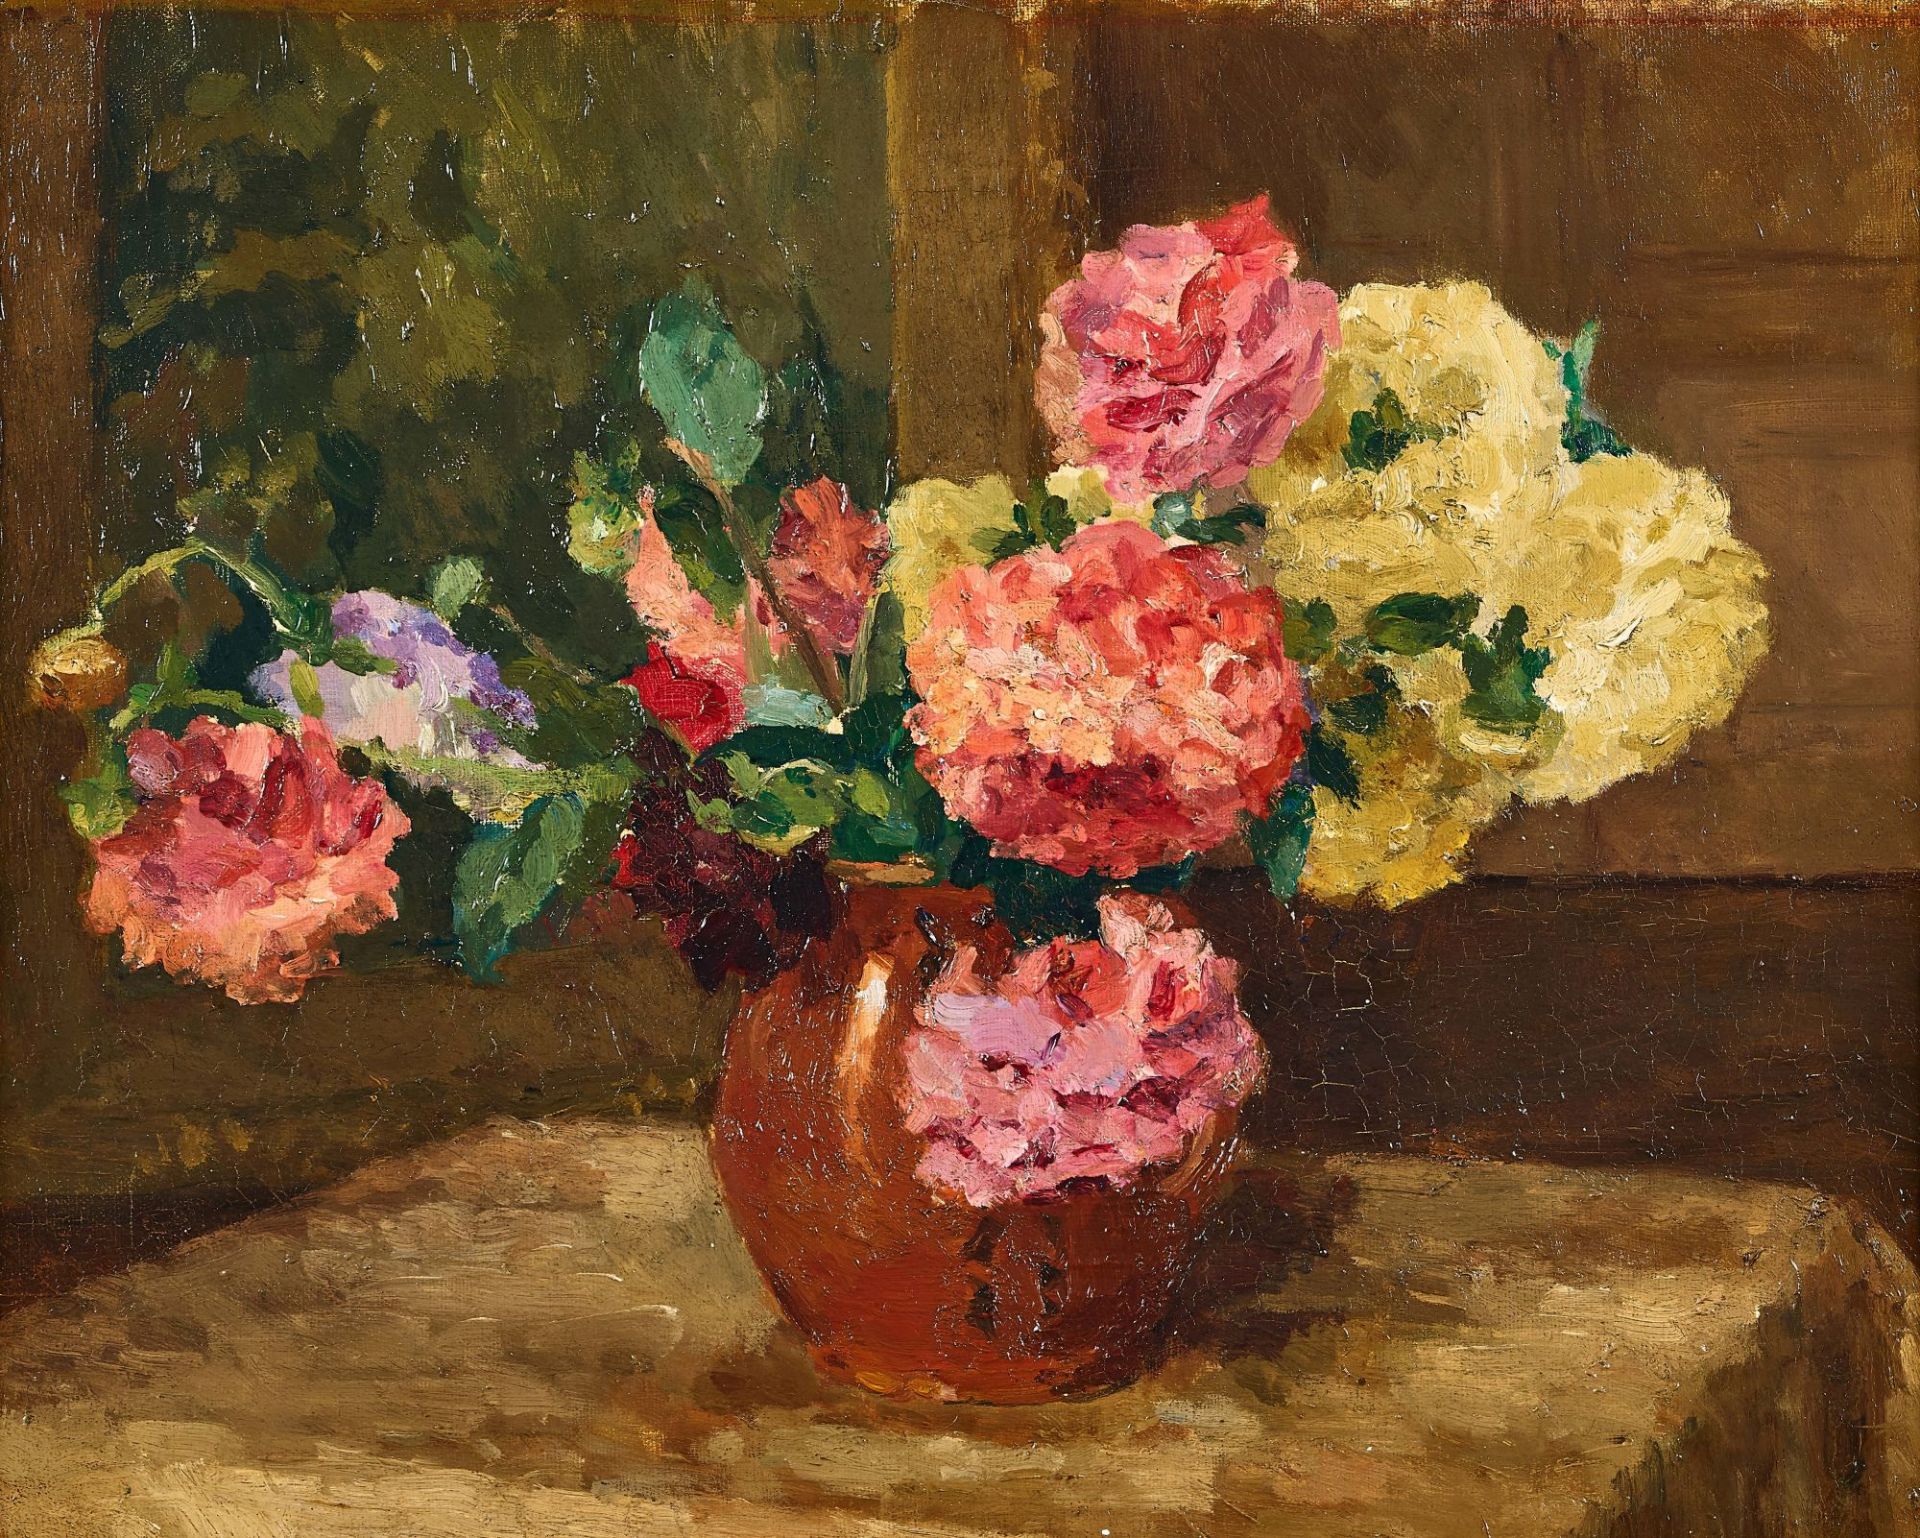 SCHWEIZ, 20. JH.: Blumen in Vase.